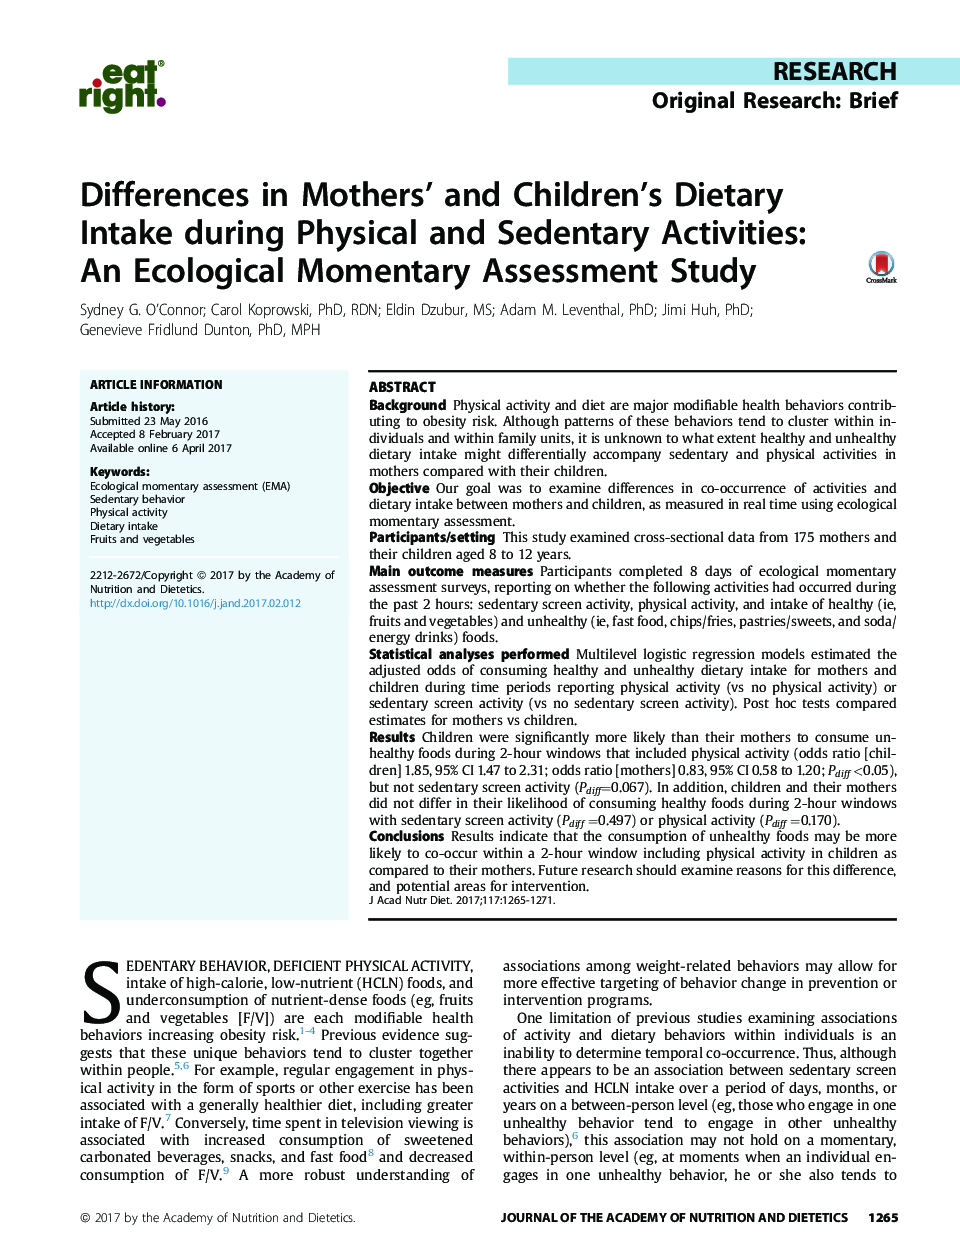 تحقیقات تحقیقاتی: تفاوت های مختصر در مصرف غذای مادران و فرزندان در طول فعالیت های فیزیکی و بارداری: یک مطالعه ارزیابی لحظه ای اکولوژیکی 